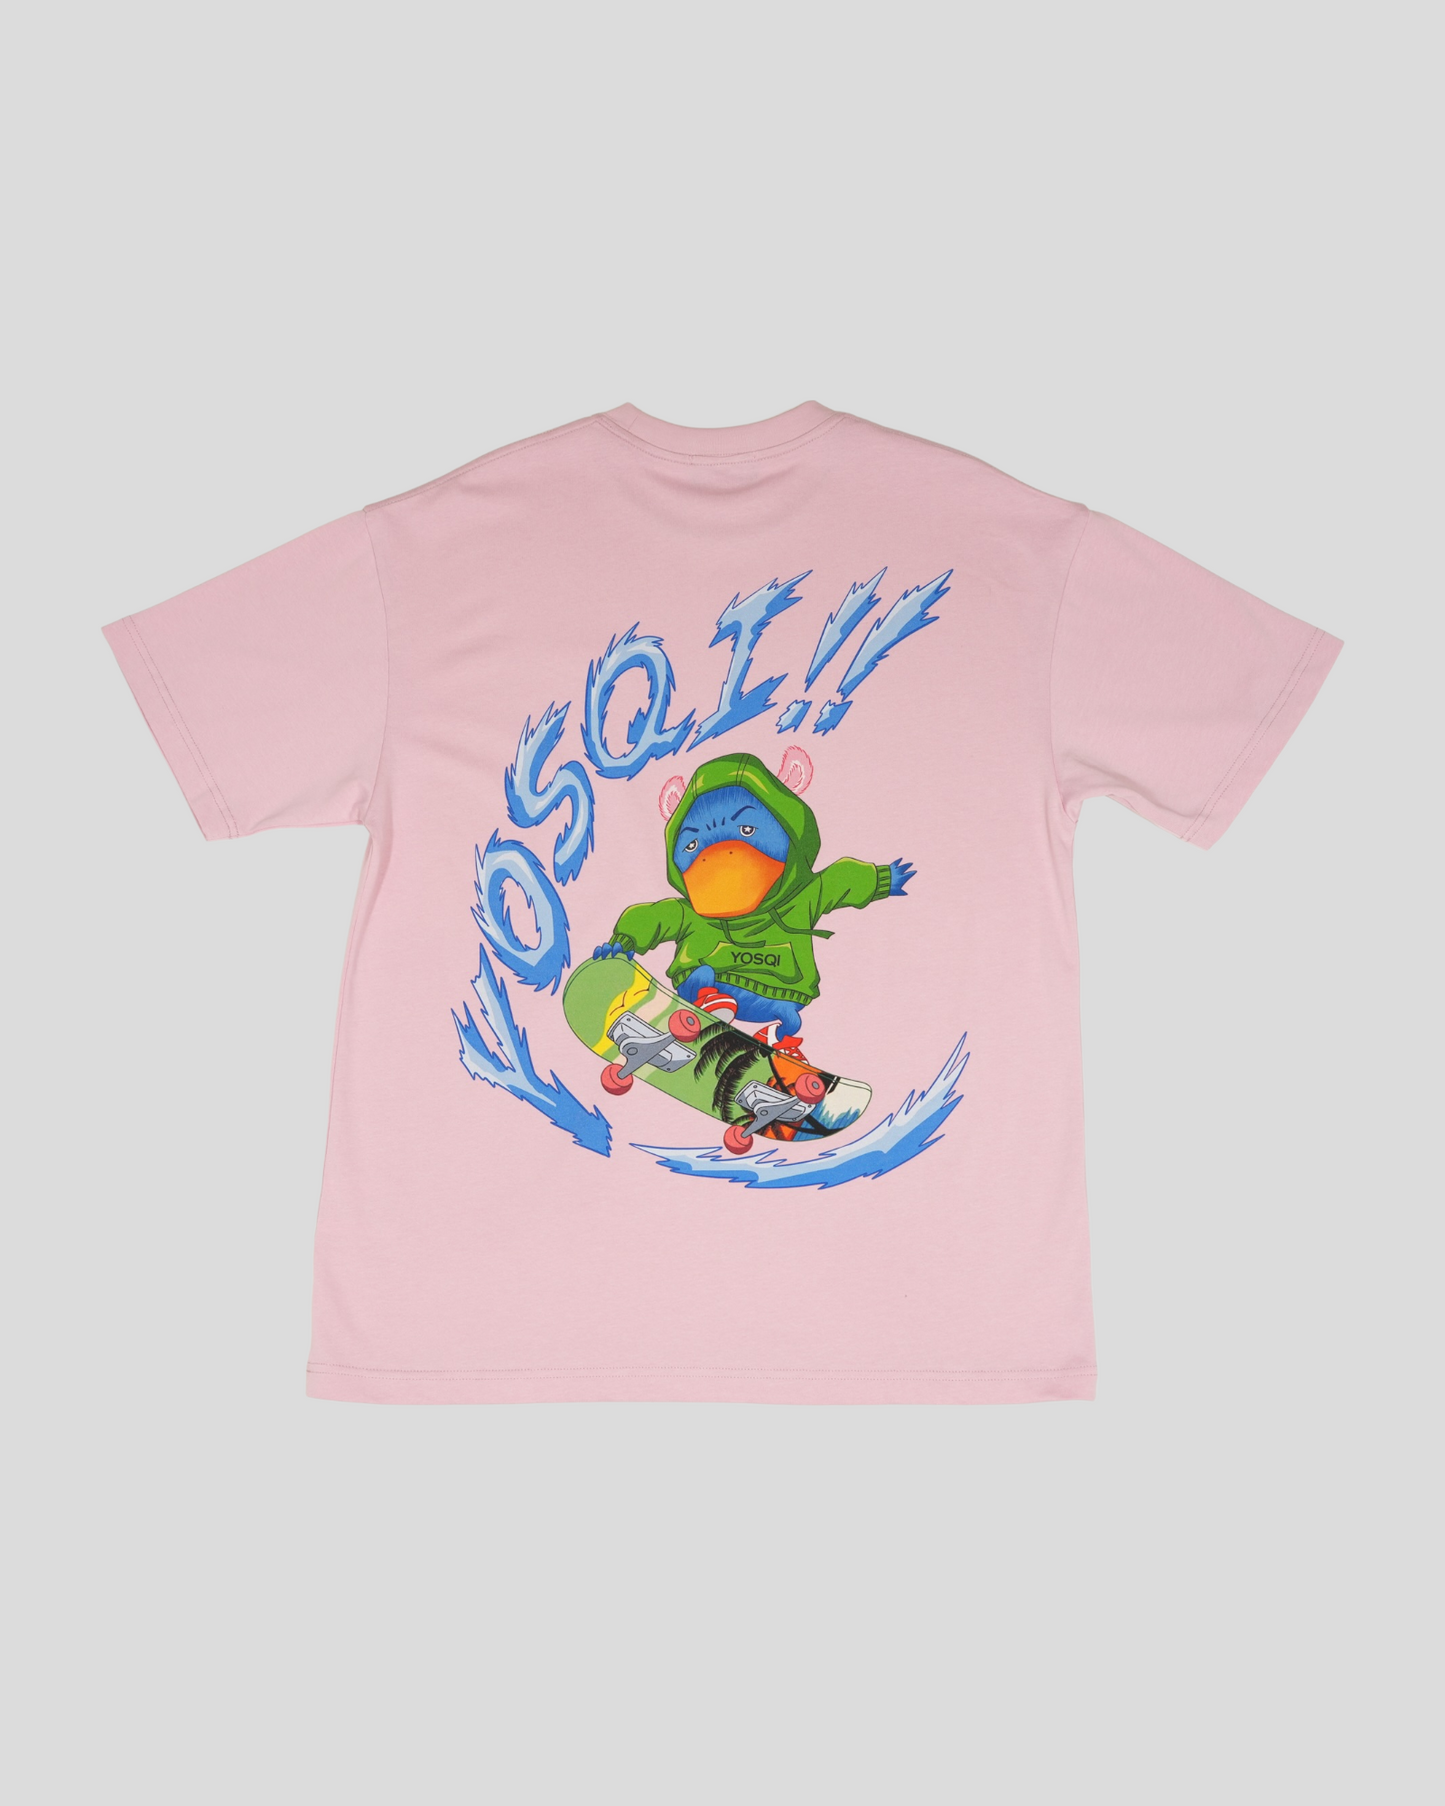 Yosqi Mascot Tee (Pink) : KIDS